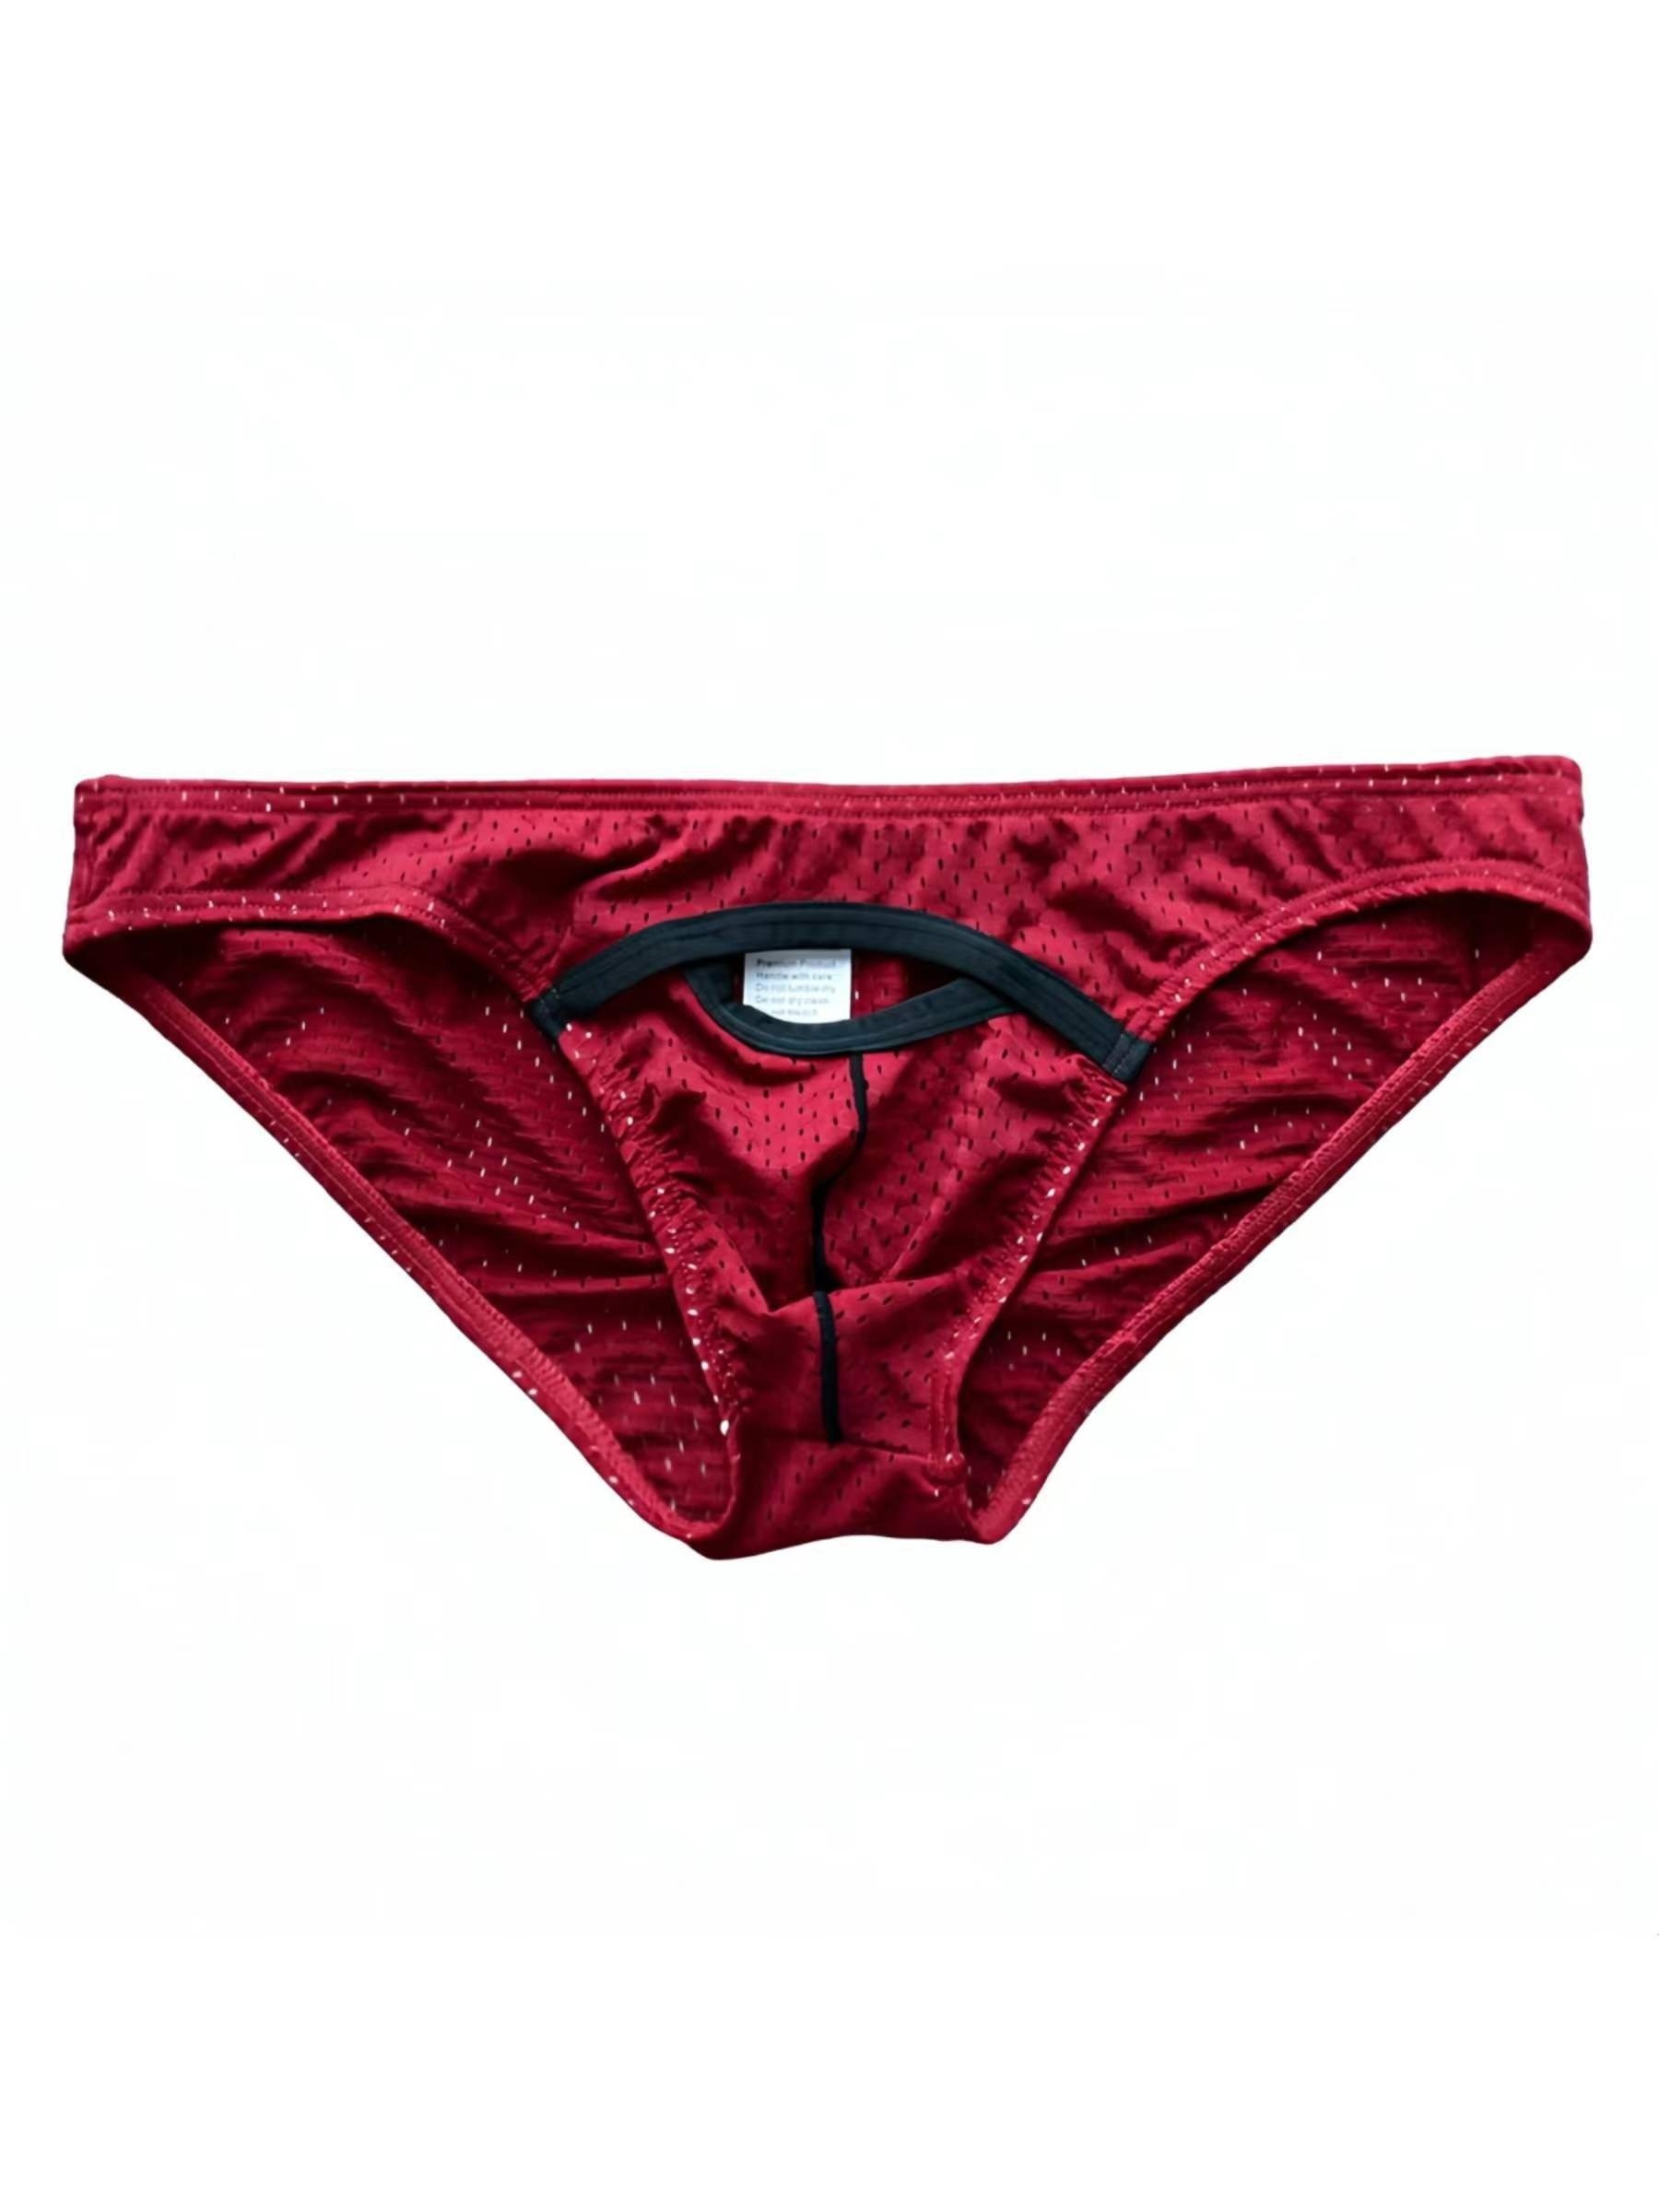 Men's Original Single Ice Silk Underwear 886 - China Underwear and